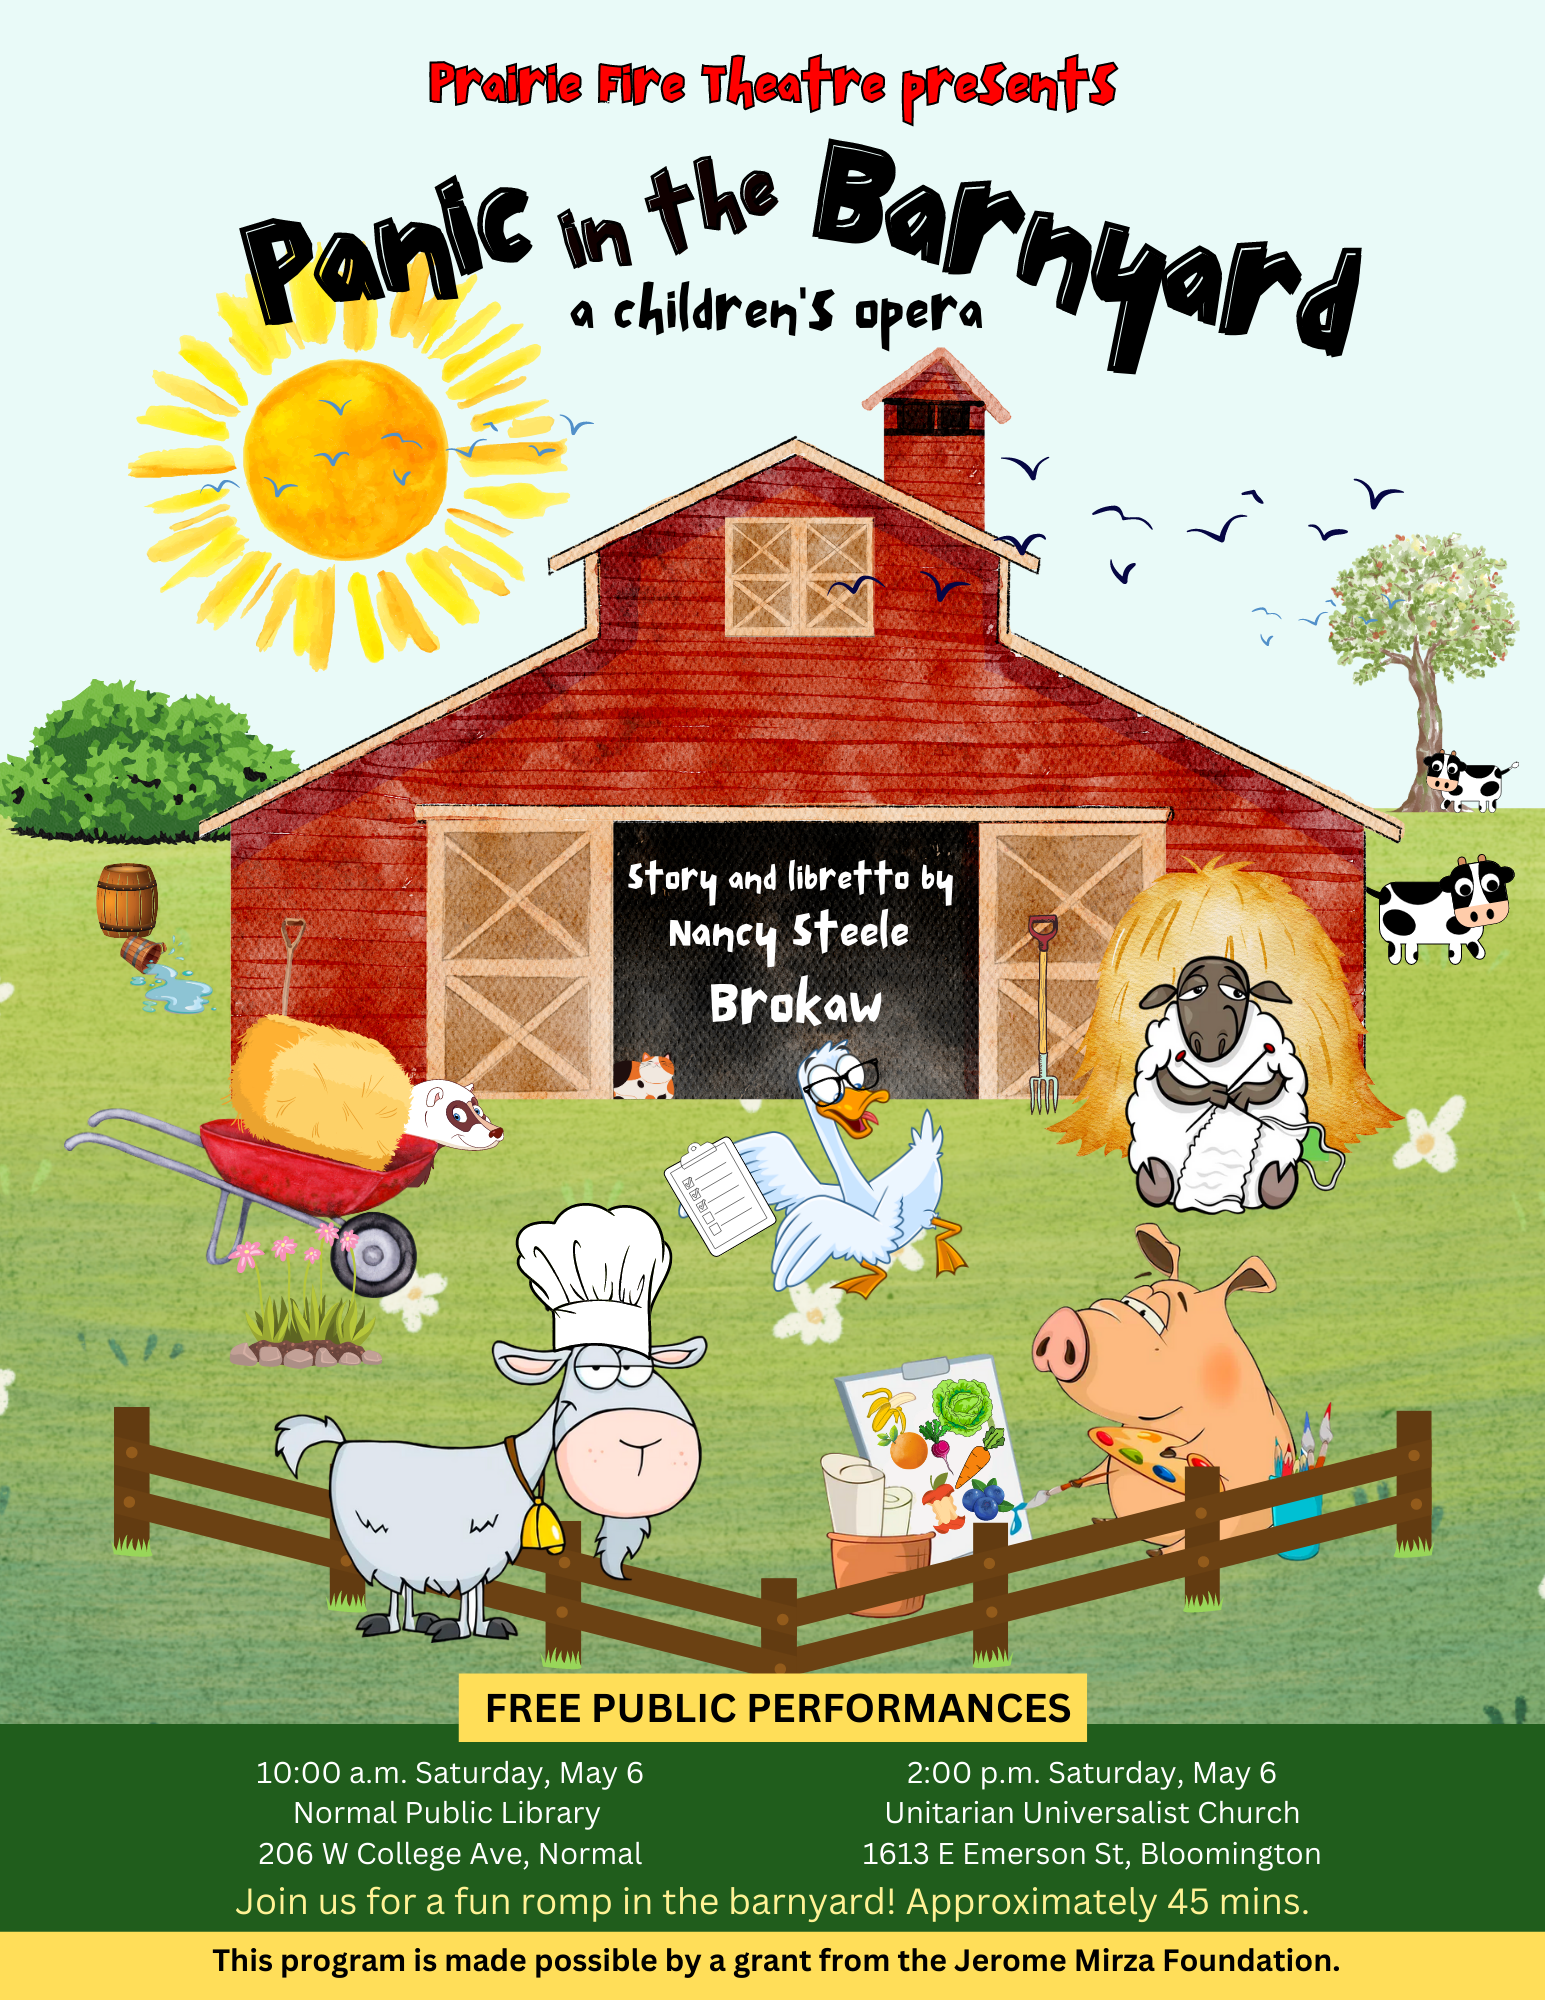 Children's Opera "Panic in the Barnyard"